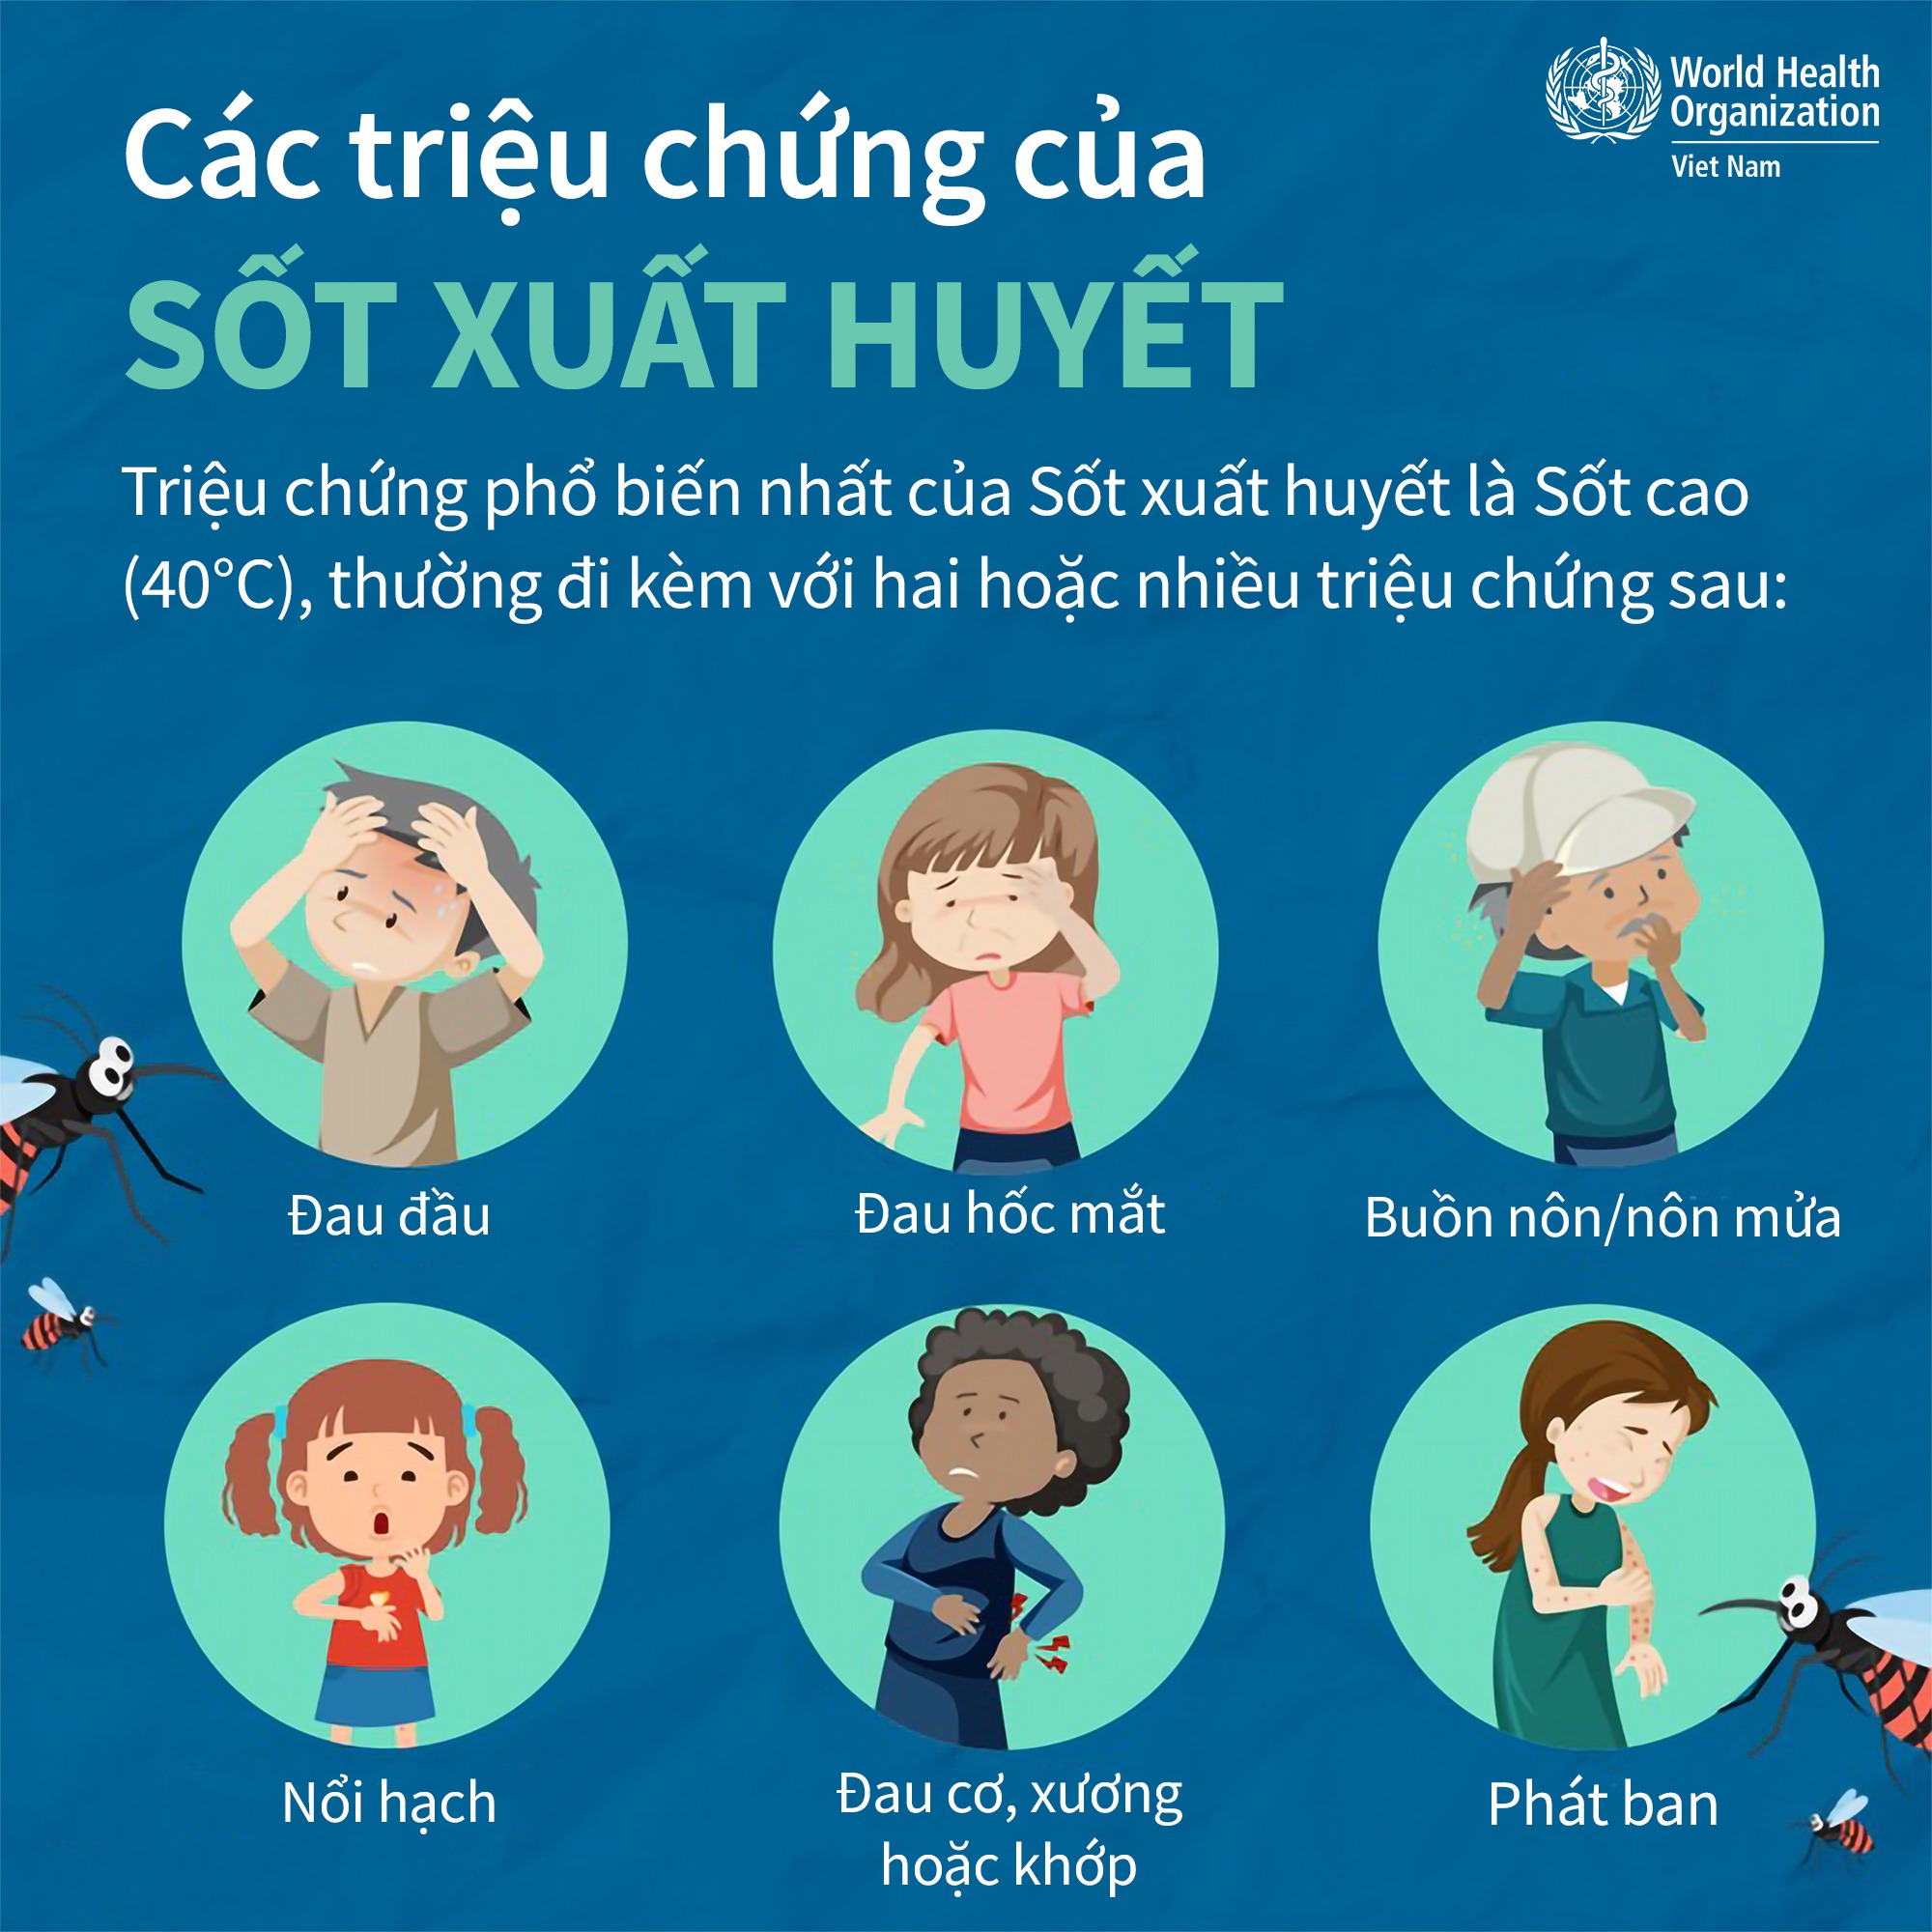 Sốt xuất huyết tăng ở Hà Nội, cảnh giác với sốt xuất huyết không triệu chứng điển hình - Ảnh 2.